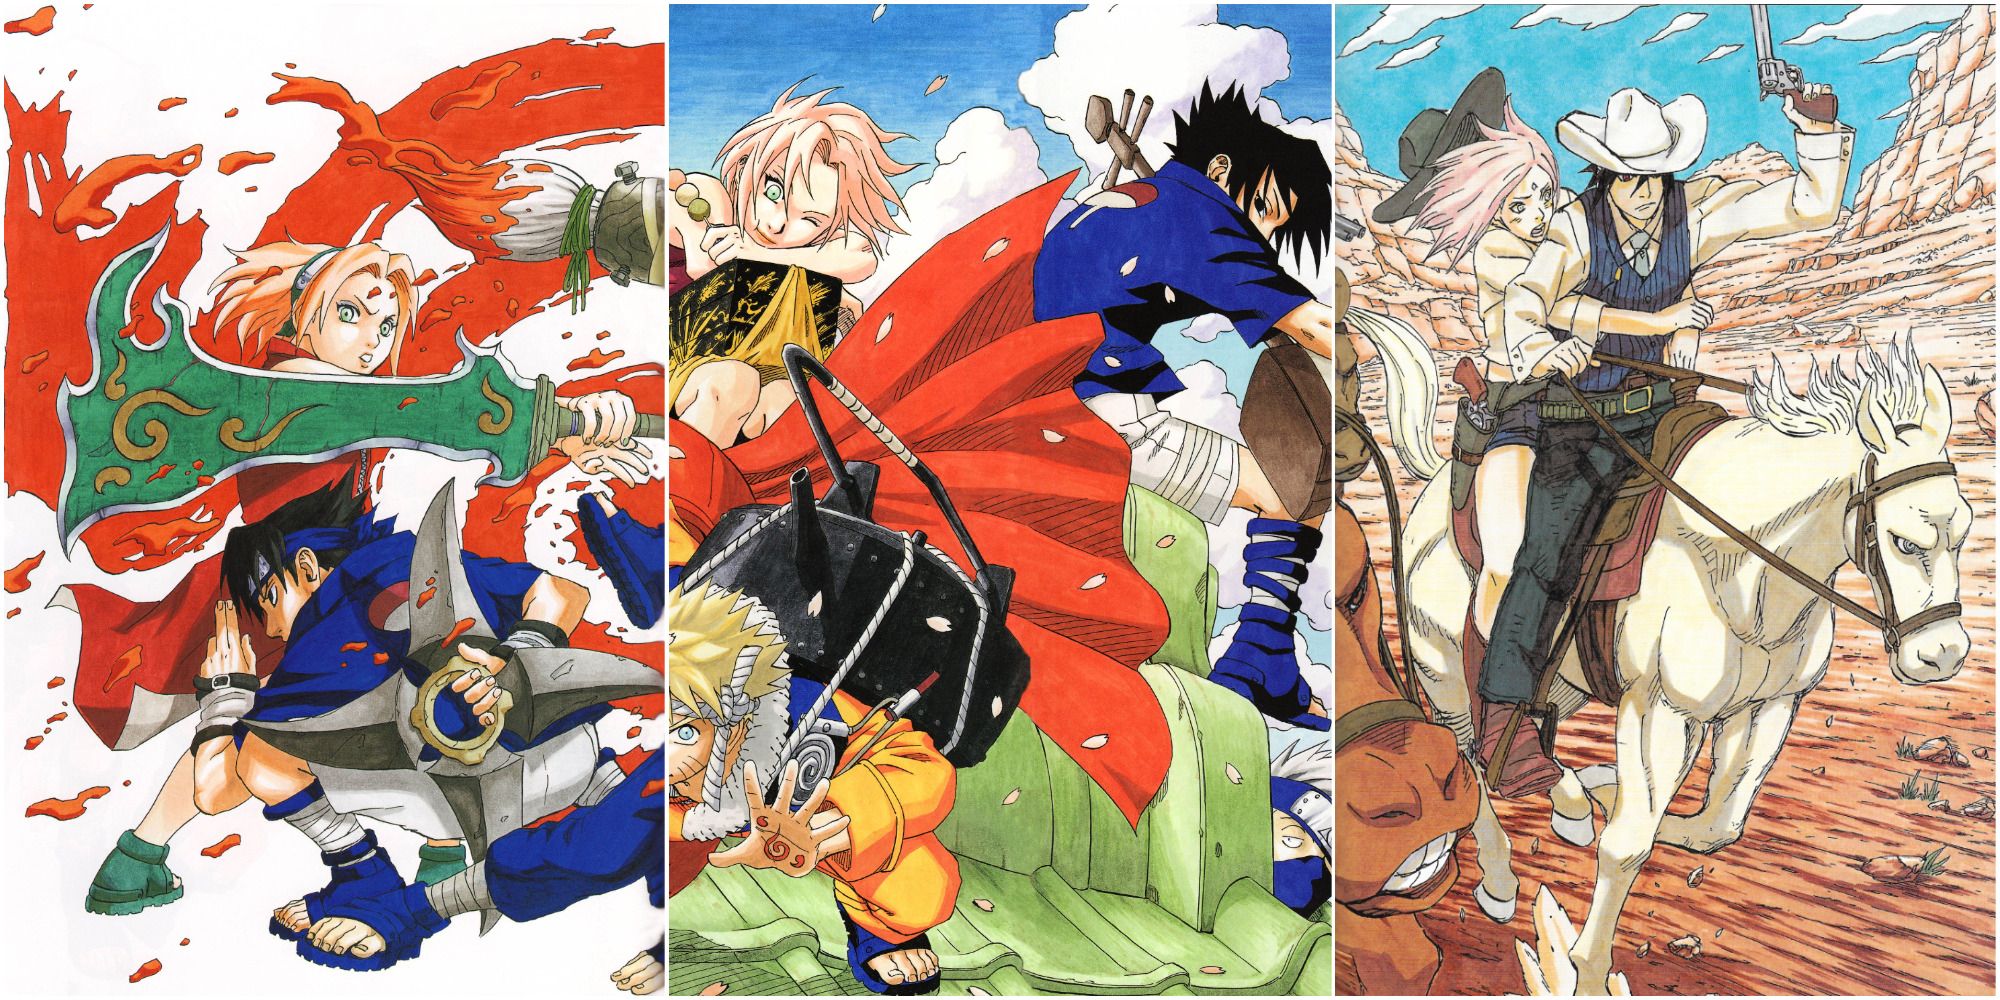 Time Travel back in time. - Chapter 5  Naruto sasuke sakura, Naruto  shippuden anime, Naruto